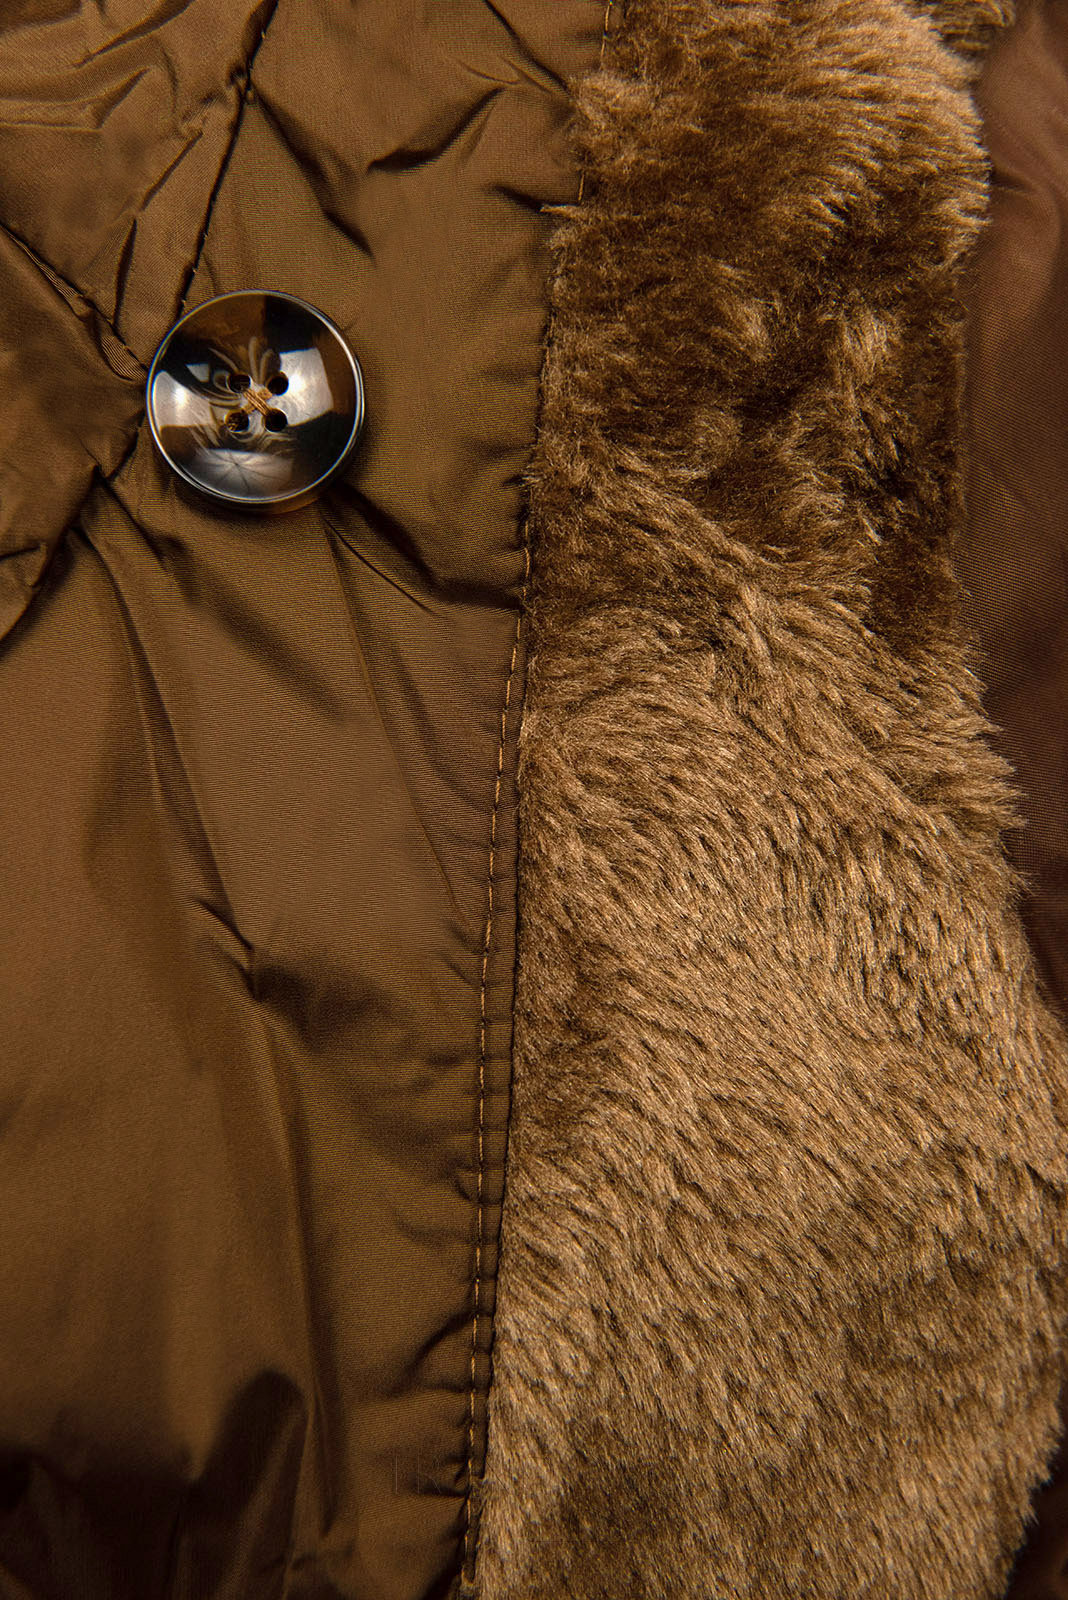 Karamelovohnedá prešívaná zimná bunda s vysokým golierom